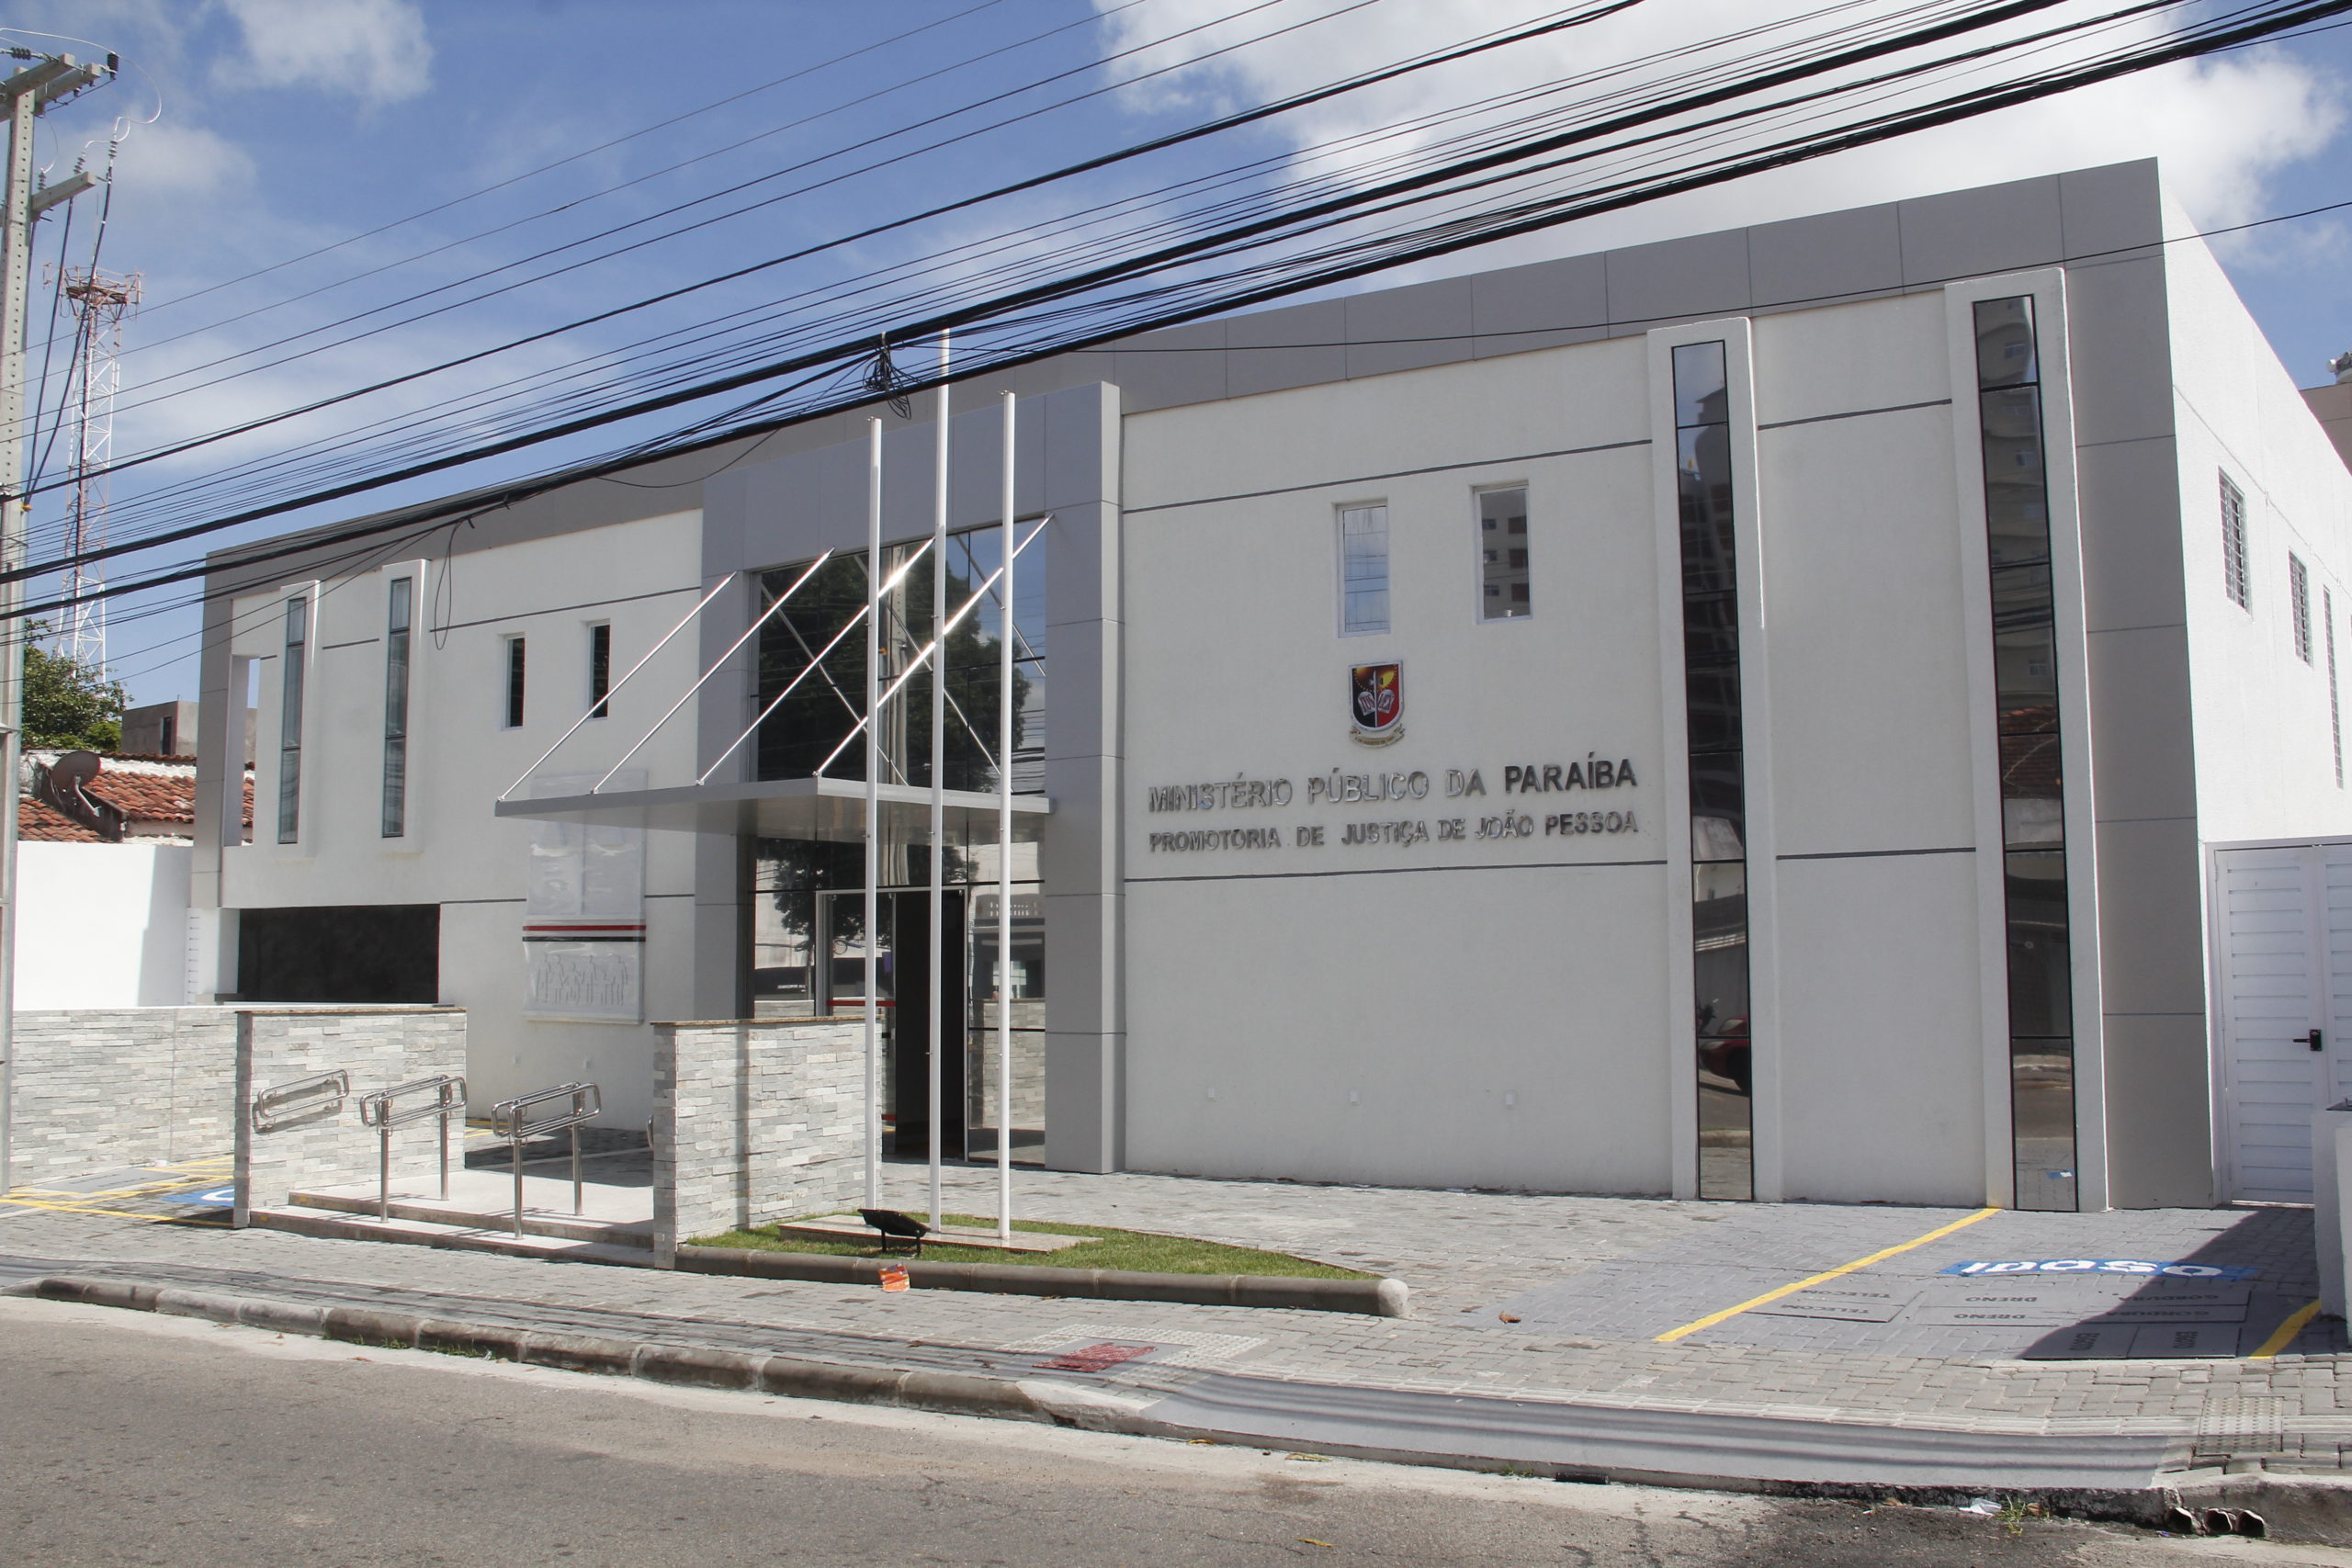 Procurador-geral de Justiça Francisco Seráphico instala nova sede da Promotoria de Justiça de João Pessoa, nesta segunda-feira